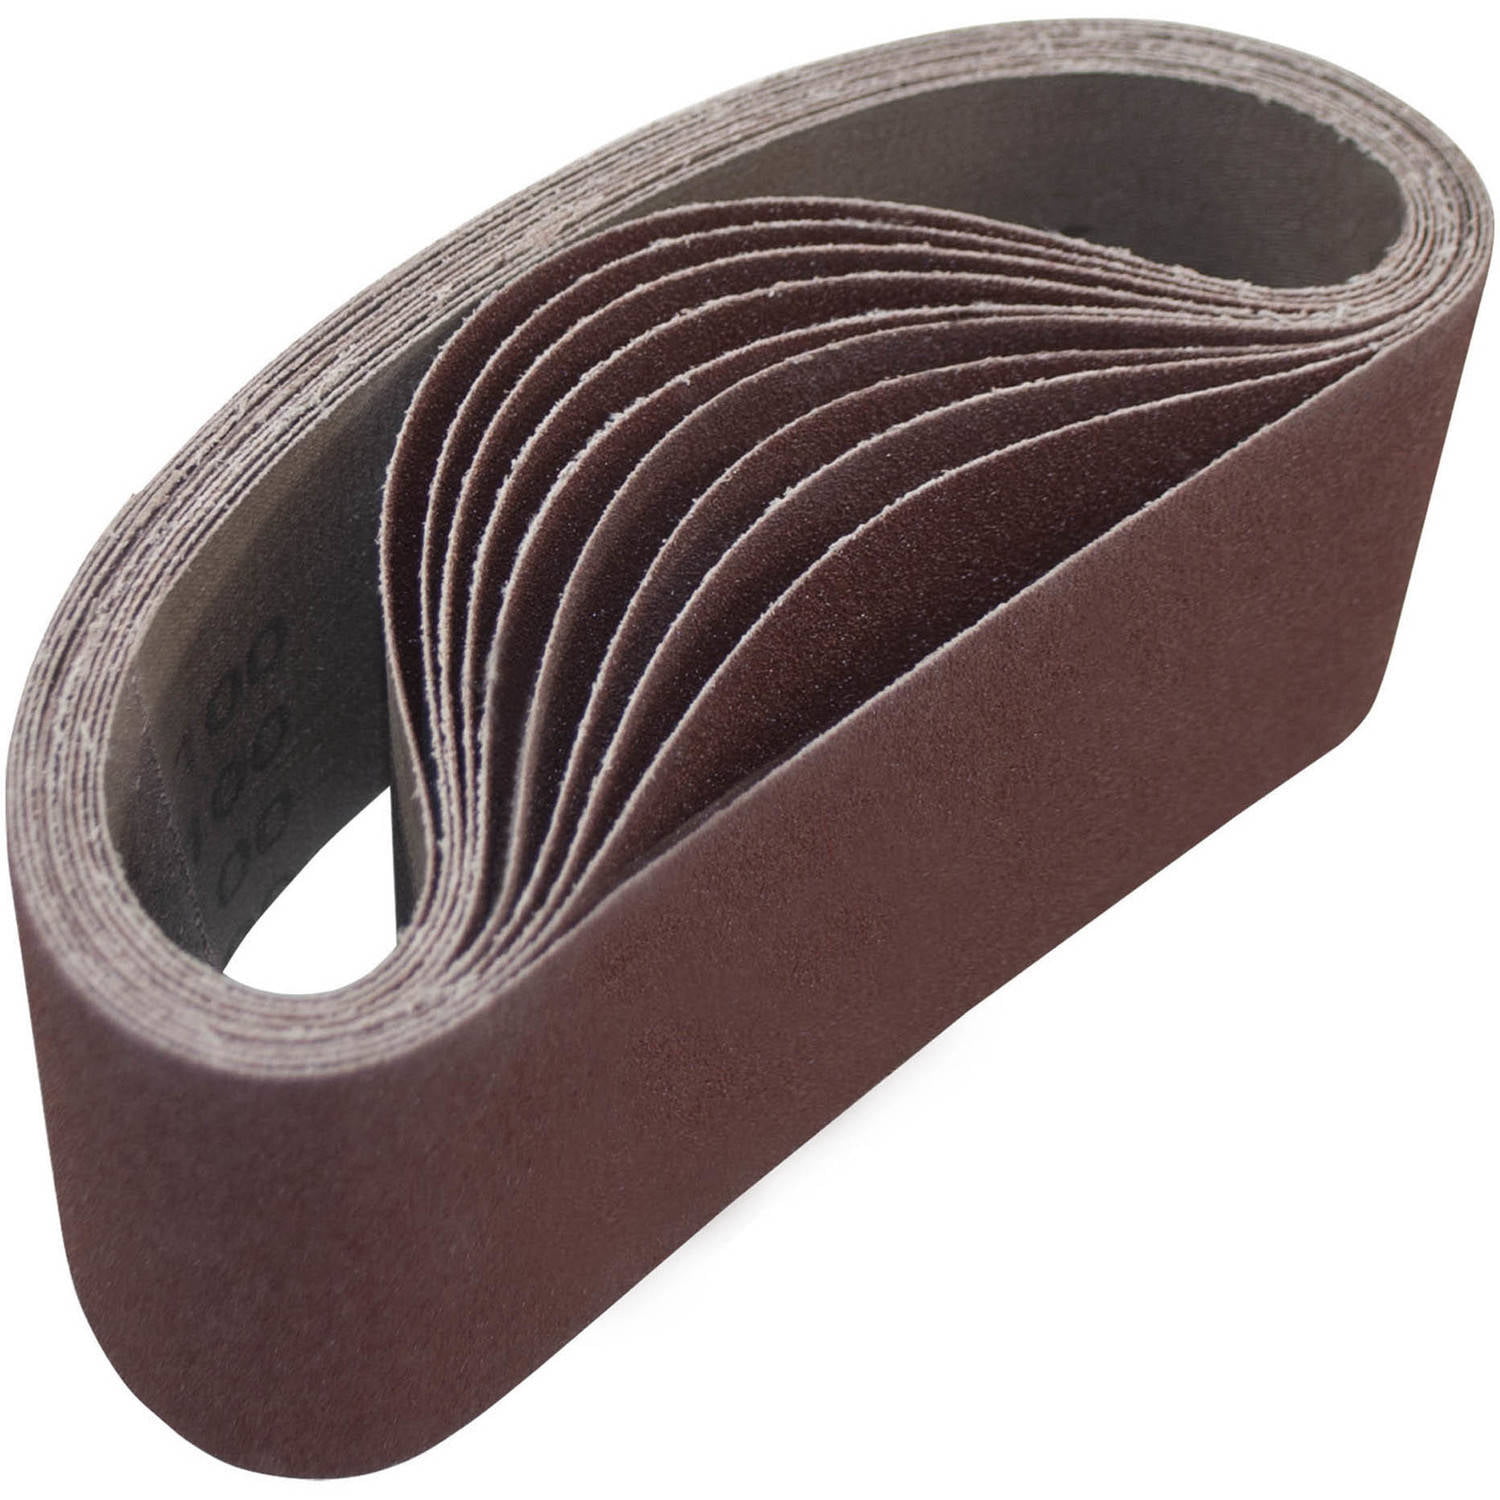 100Pcs Sanding Belt Sturdy Abrasive Sanding Belt for Furniture Stainless Steel 